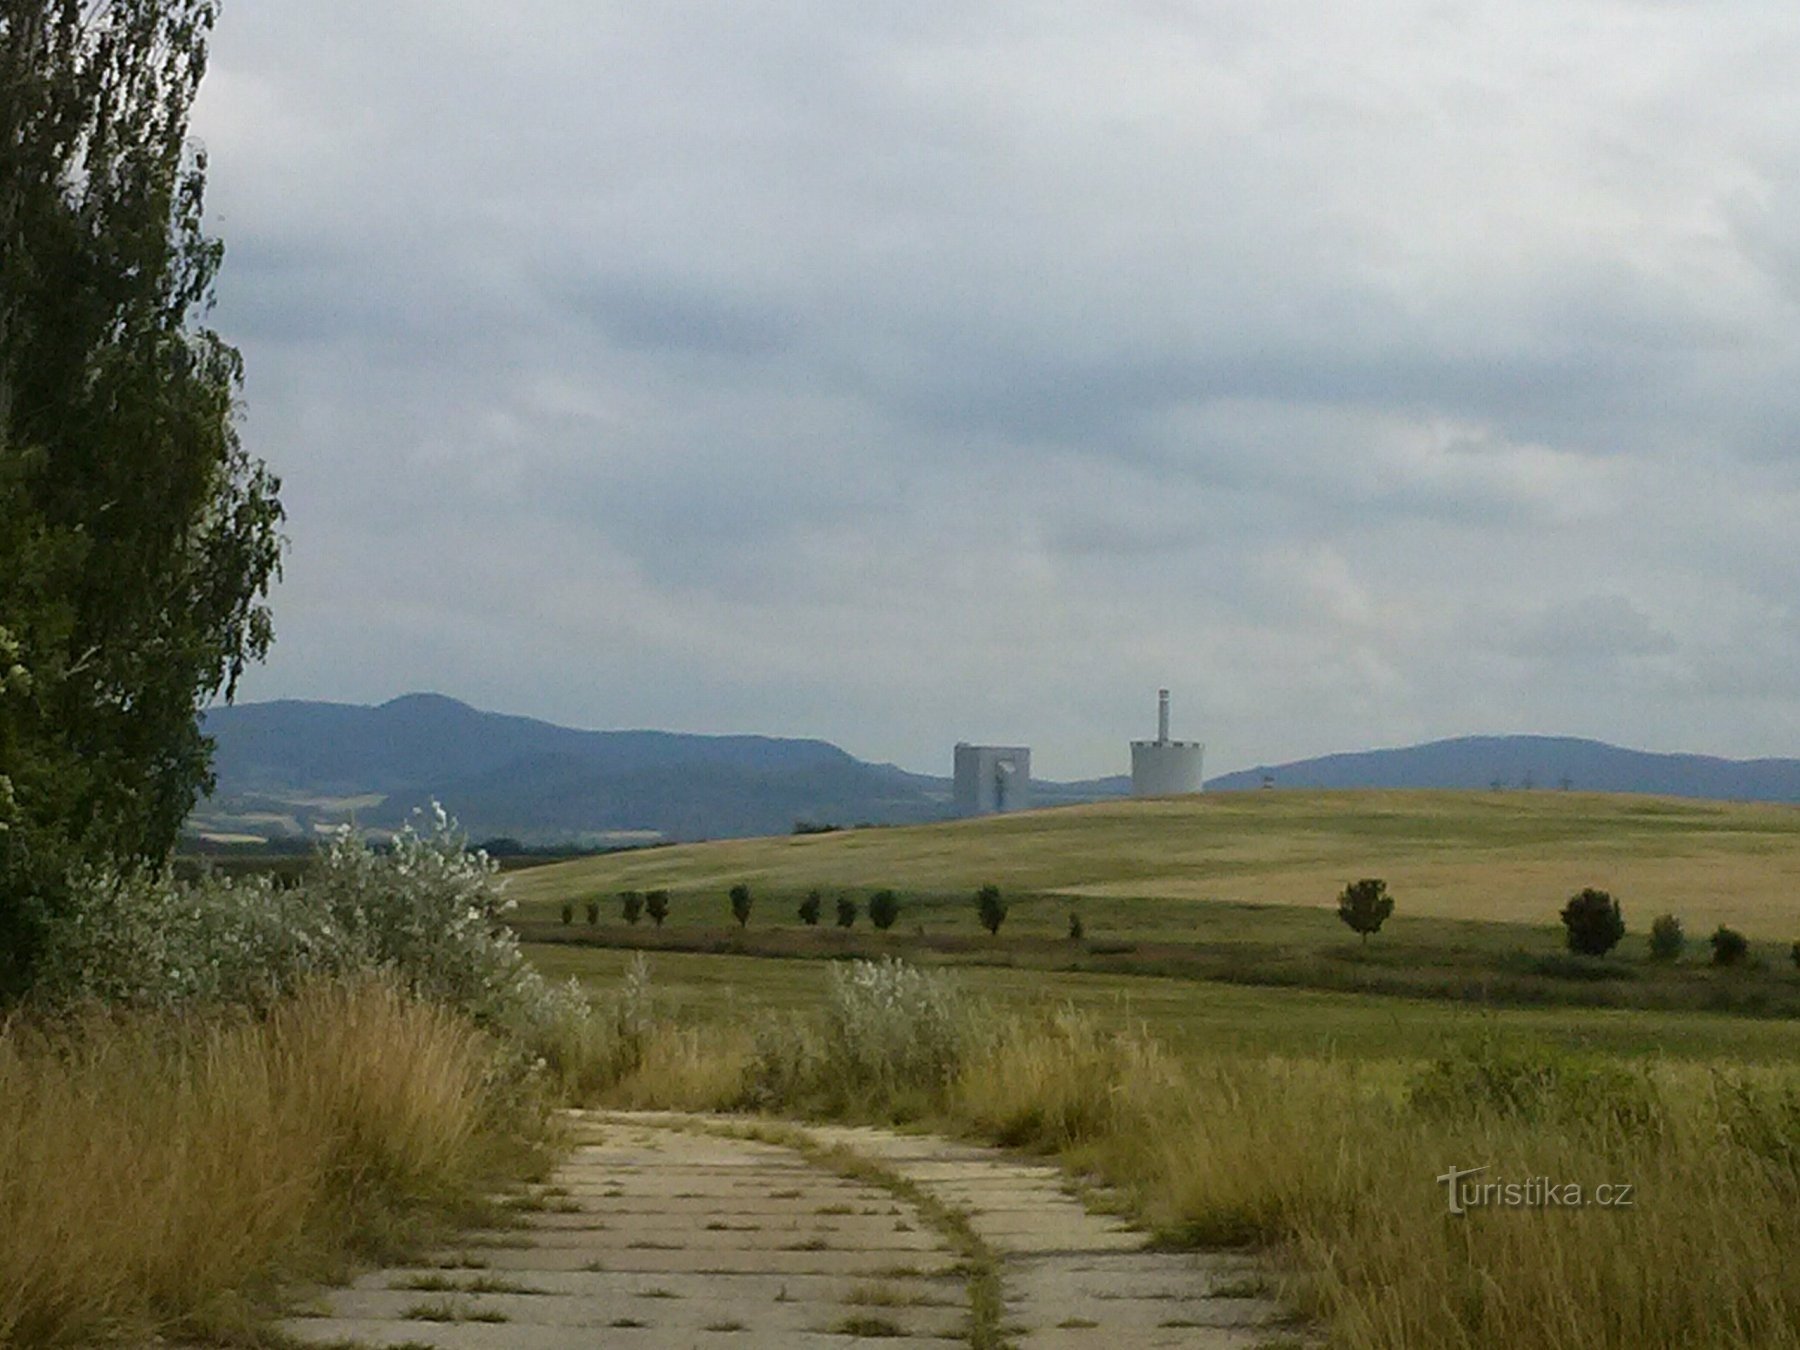 Ein Blick in die Landschaft, die Türme des Kraftwerks Chotějovice ragen heraus